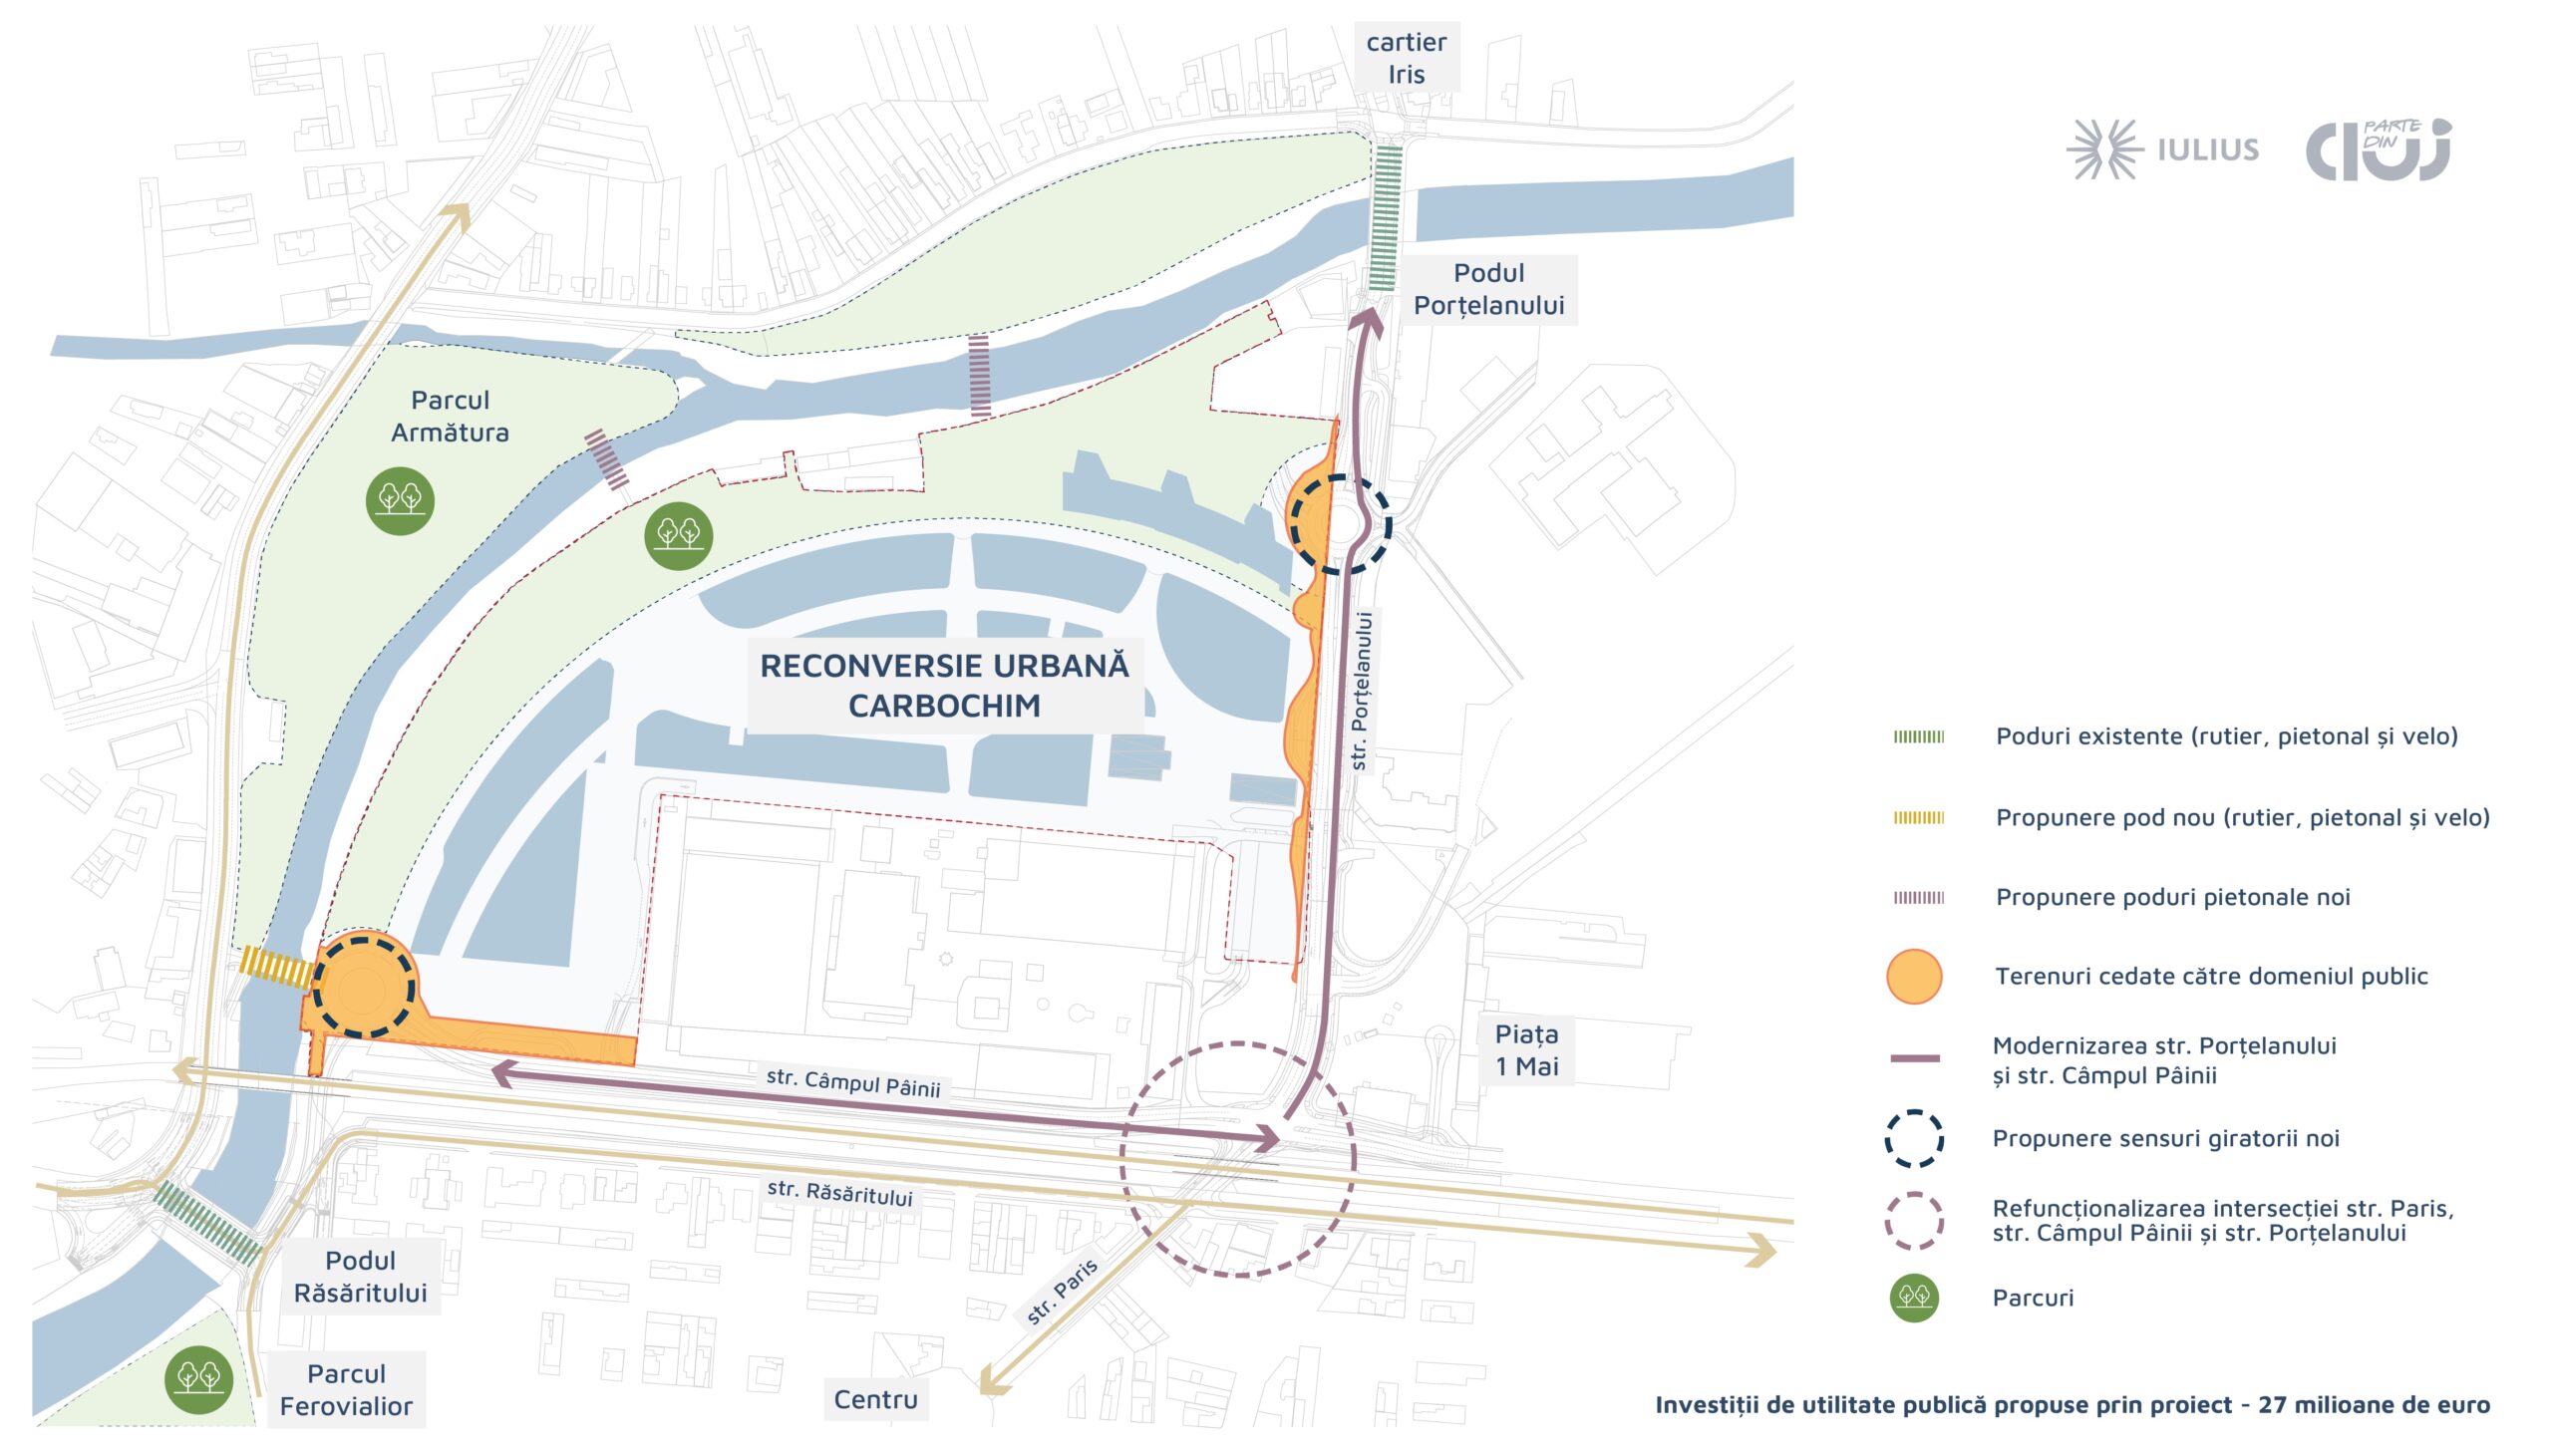 Investiții de utilitate publică de peste 27 milioane de euro, odată cu reconversia platformei Carbochim: pod și pasarele pietonale peste Someș, noi sensuri giratorii, modernizare străzi și Piața 1 Mai, piste de biciclete și alei pietonale.